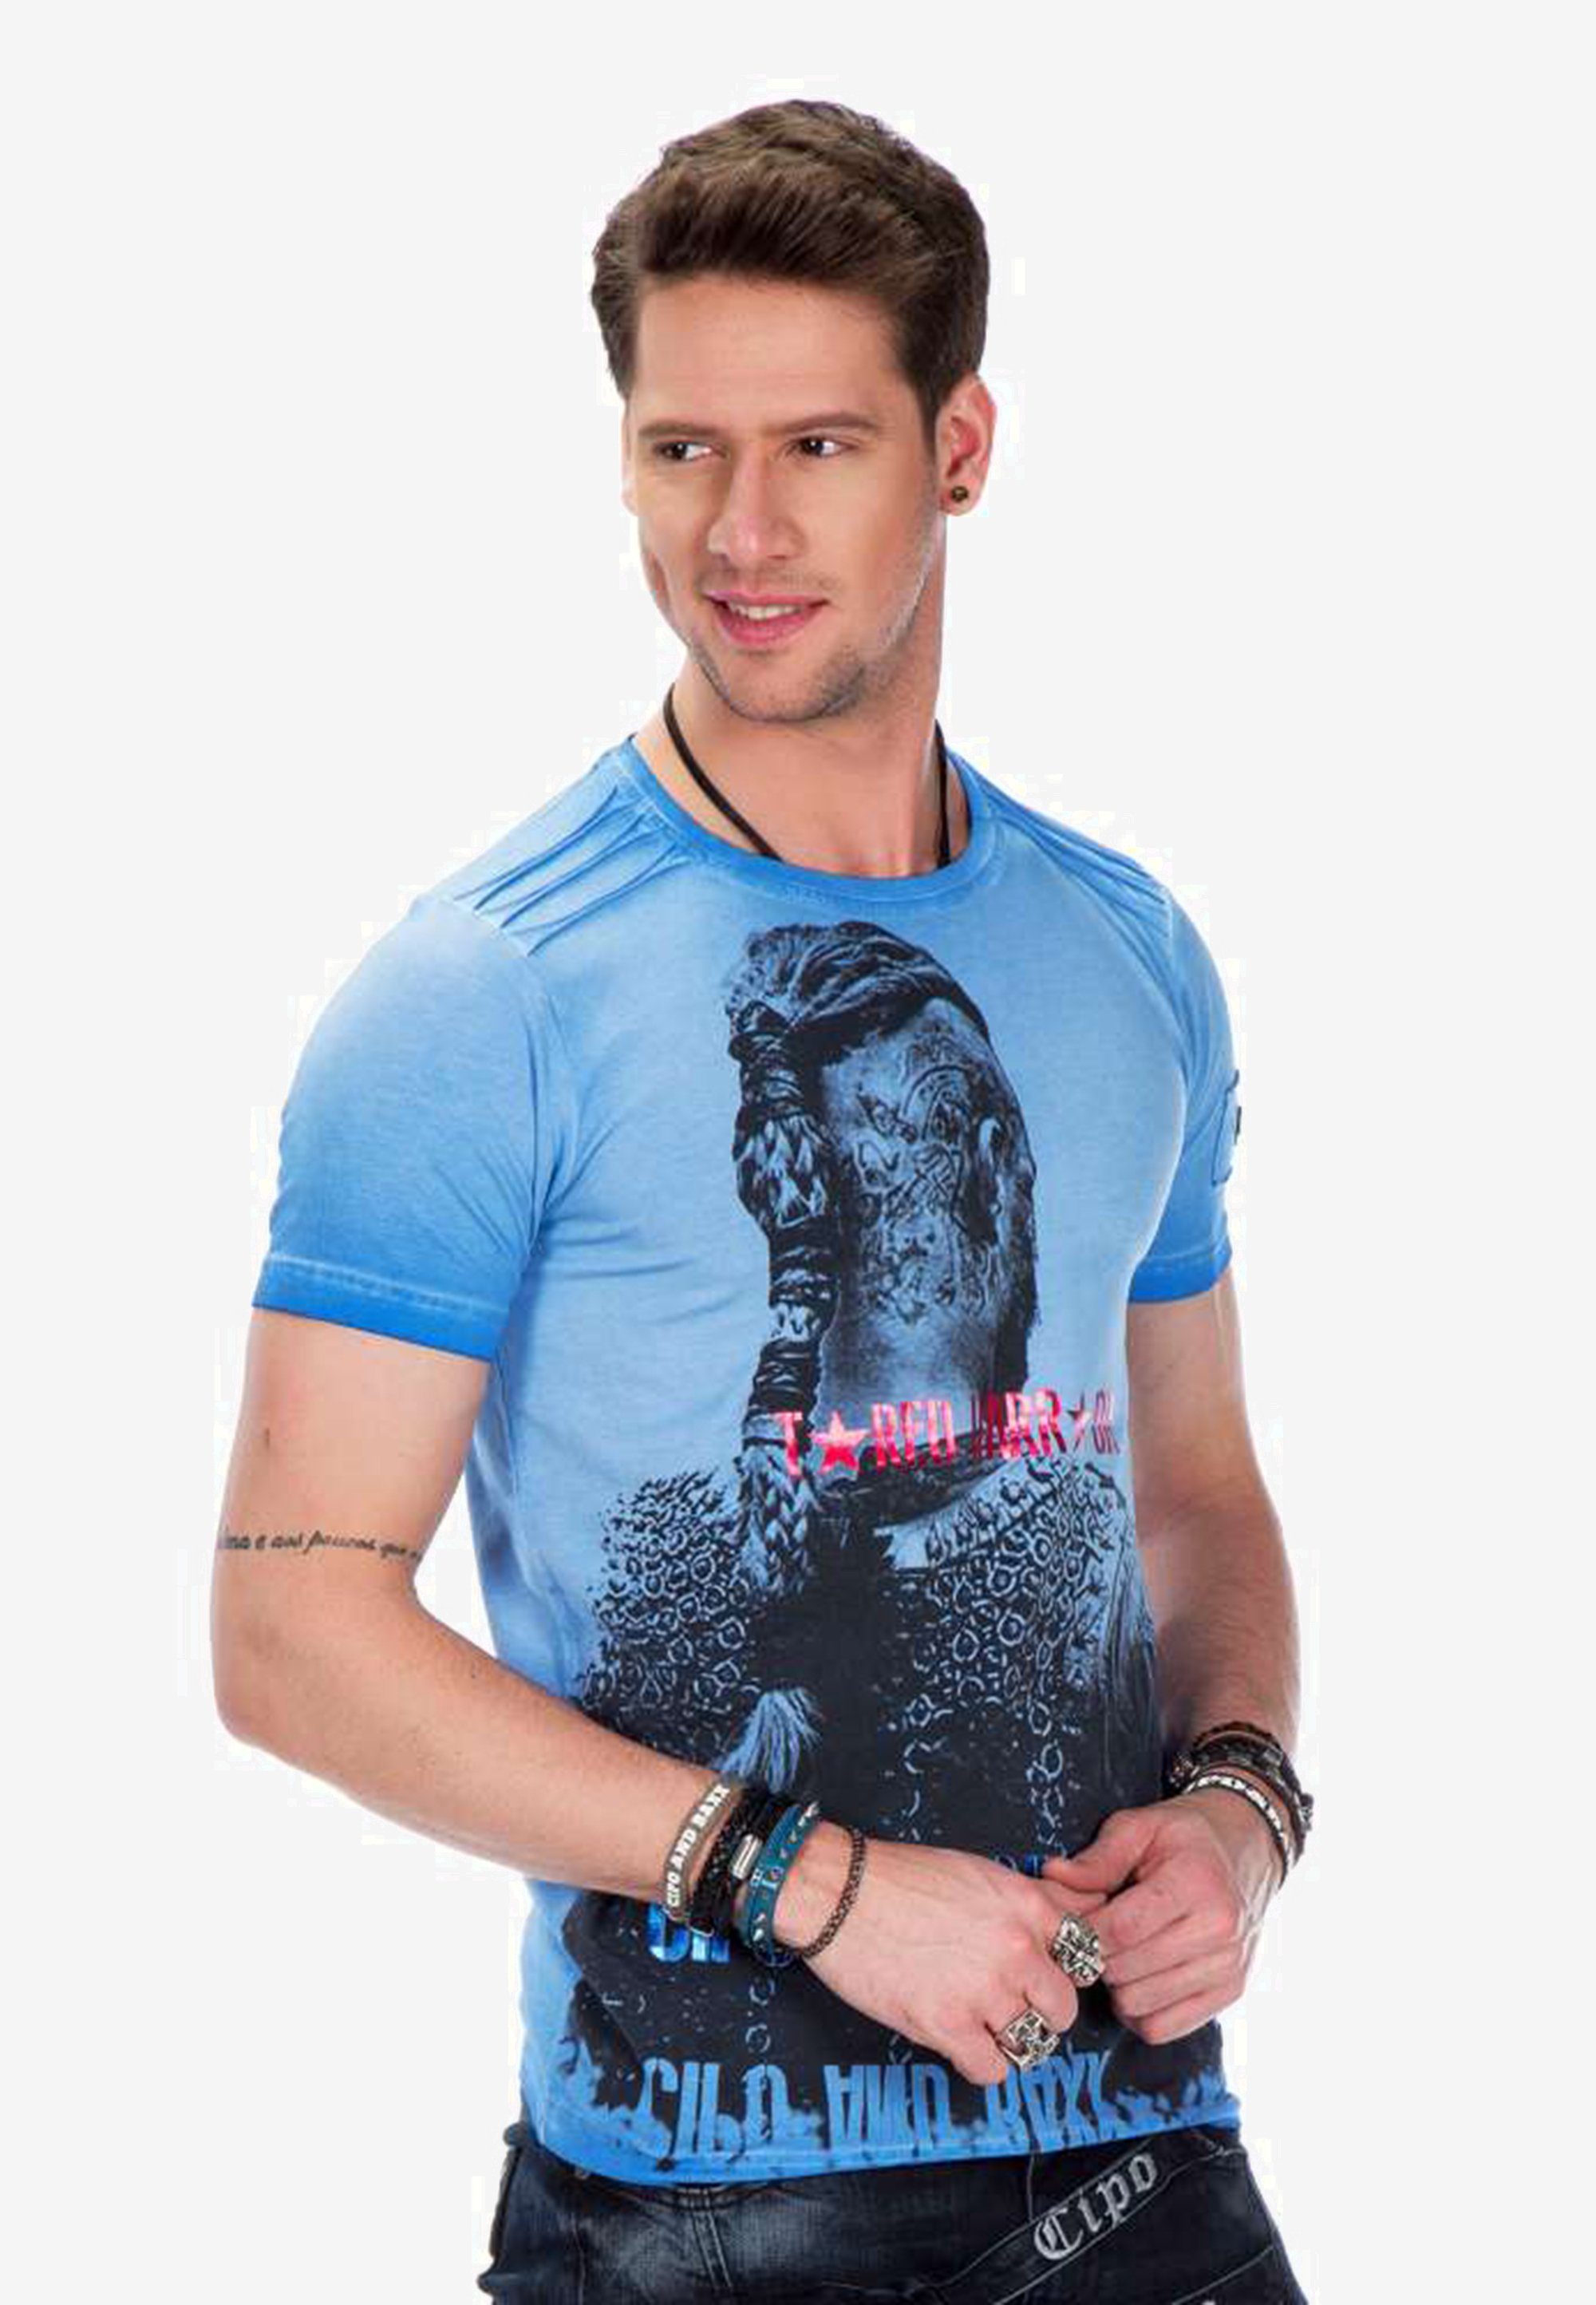 Cipo & Baxx T-Shirt mit Allover Print blau